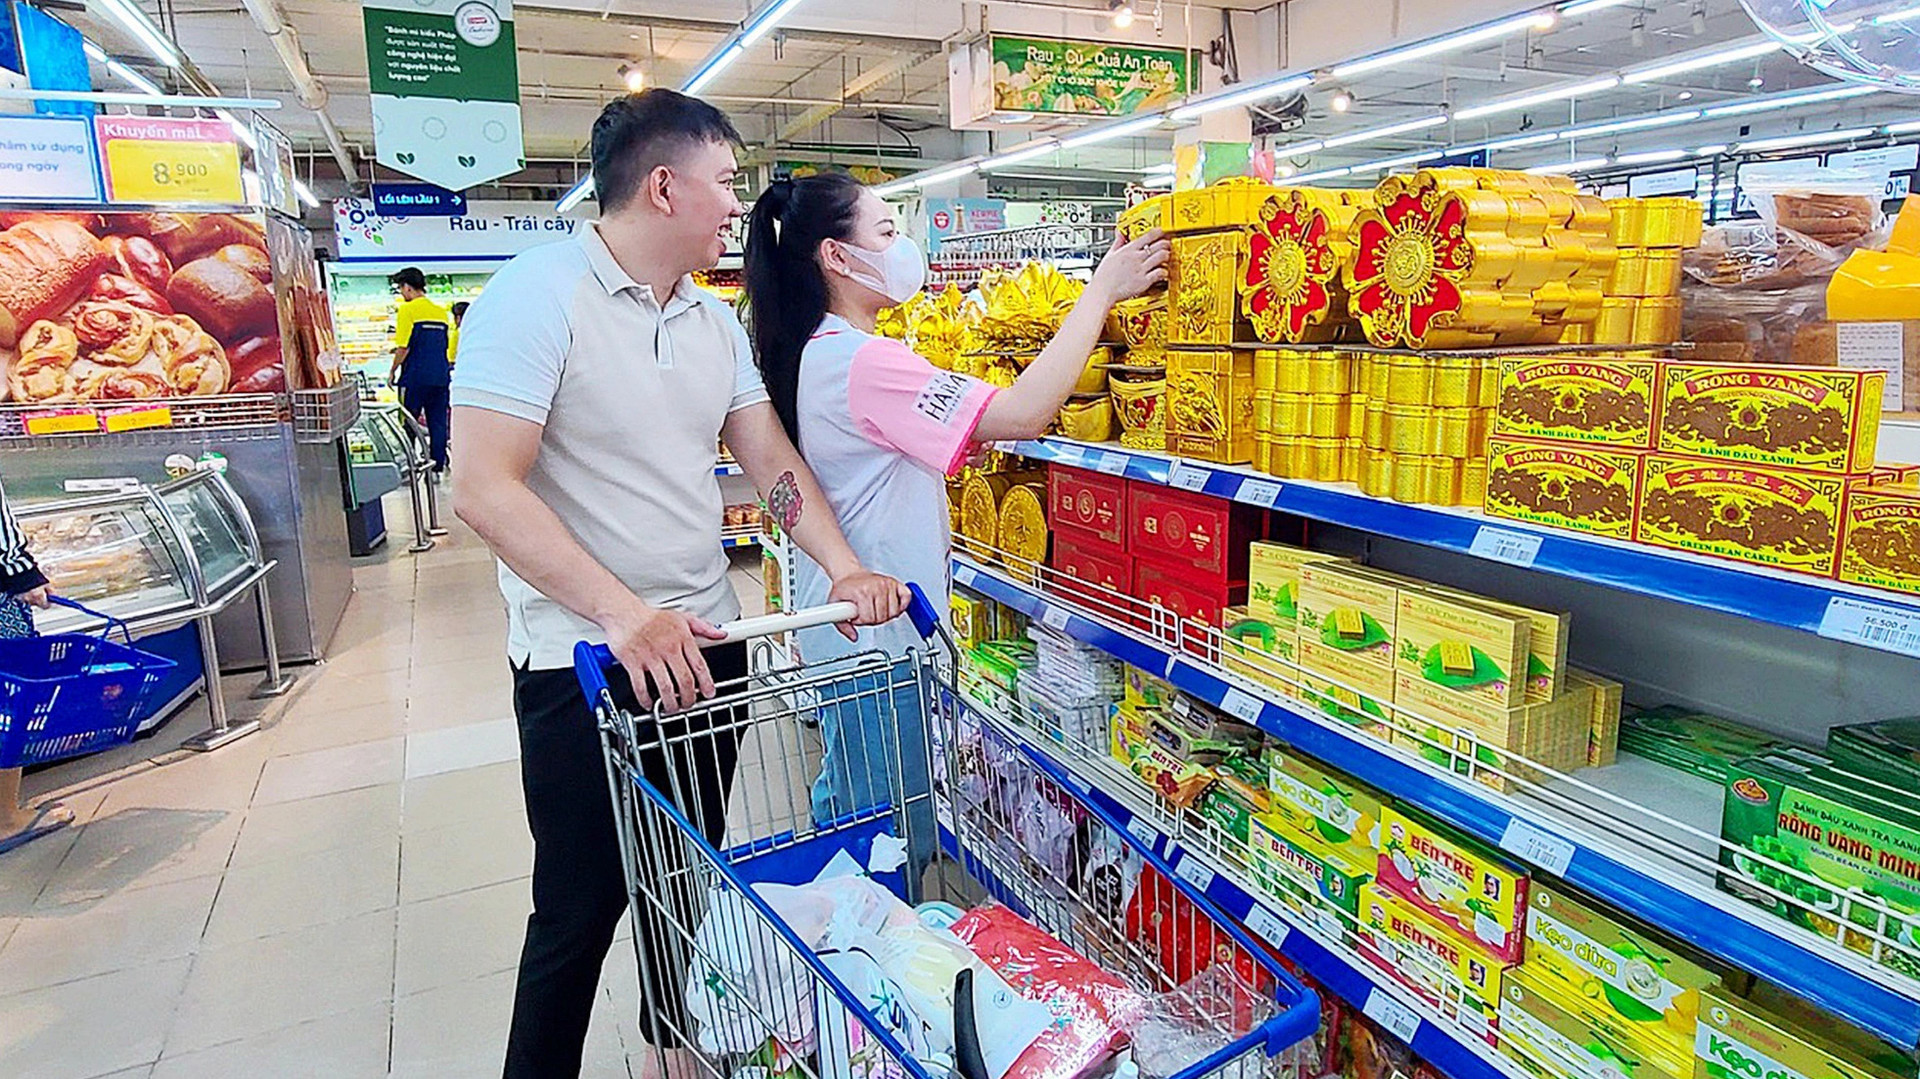 Hàng Tết đã được nhiều siêu thị đưa lên kệ với mức giá hấp dẫn nhưng chưa nhiều người tiêu dùng quan tâm - Ảnh: NHẬT XUÂN